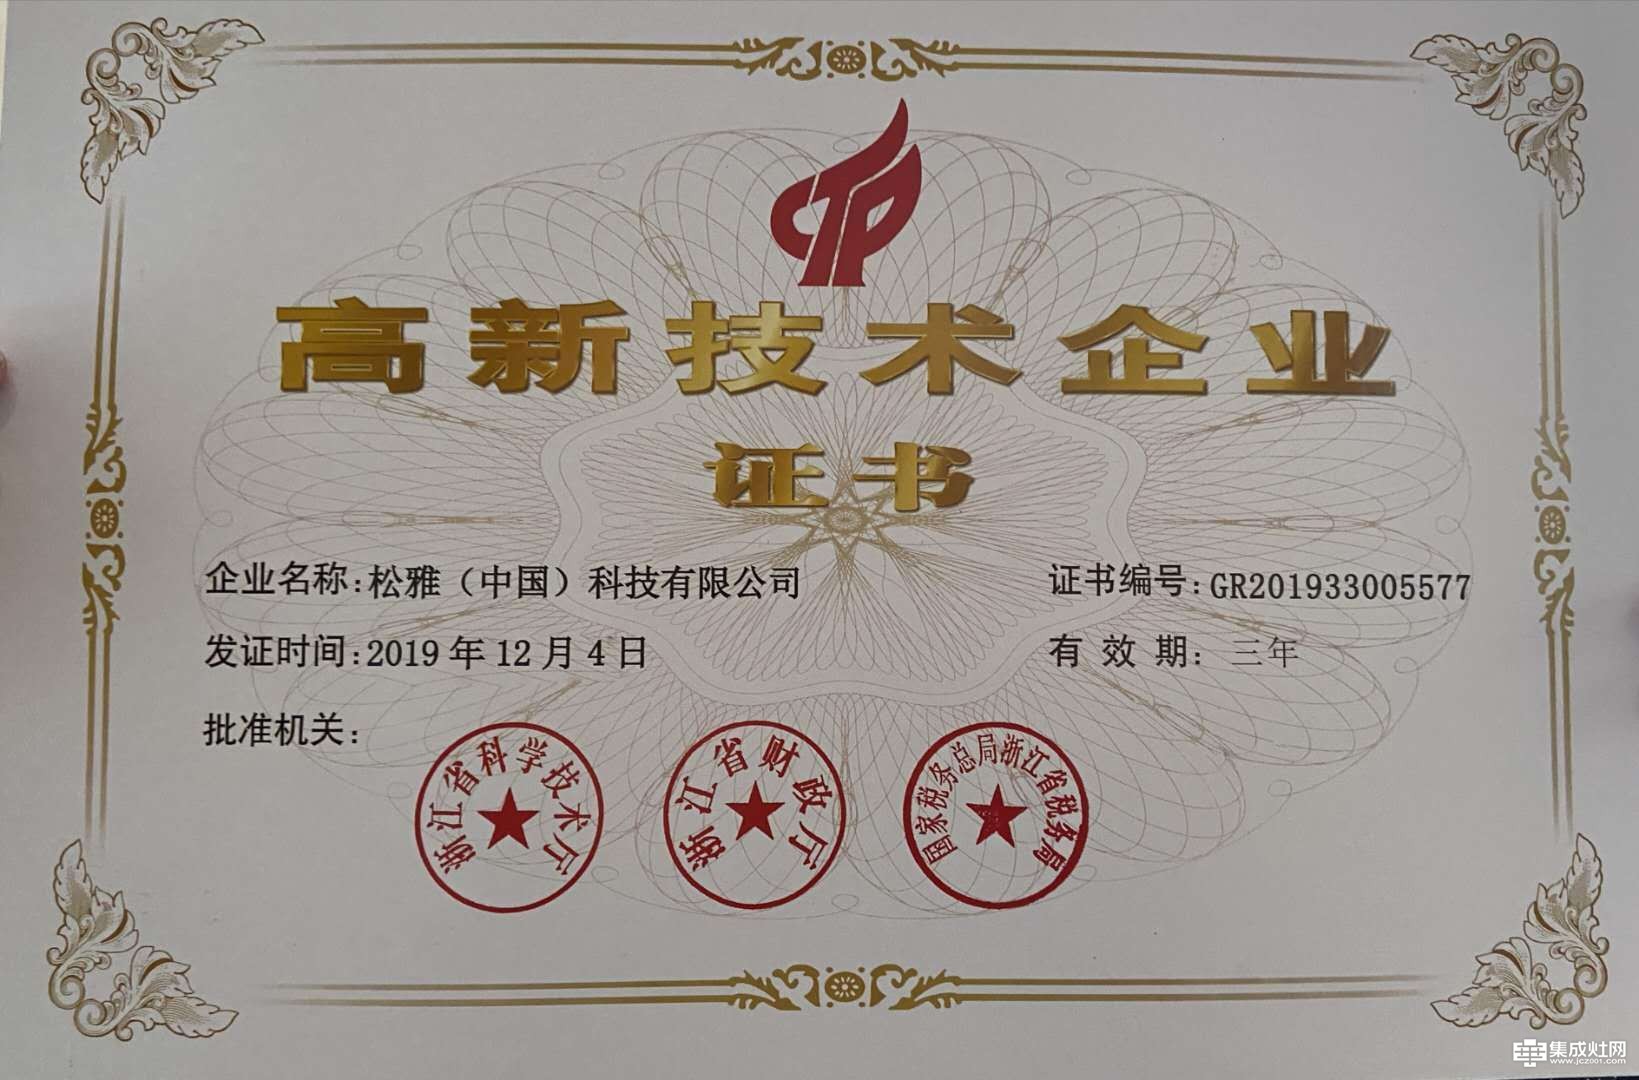 松雅（中国）科技有限公司荣获国家高新技术企业称号